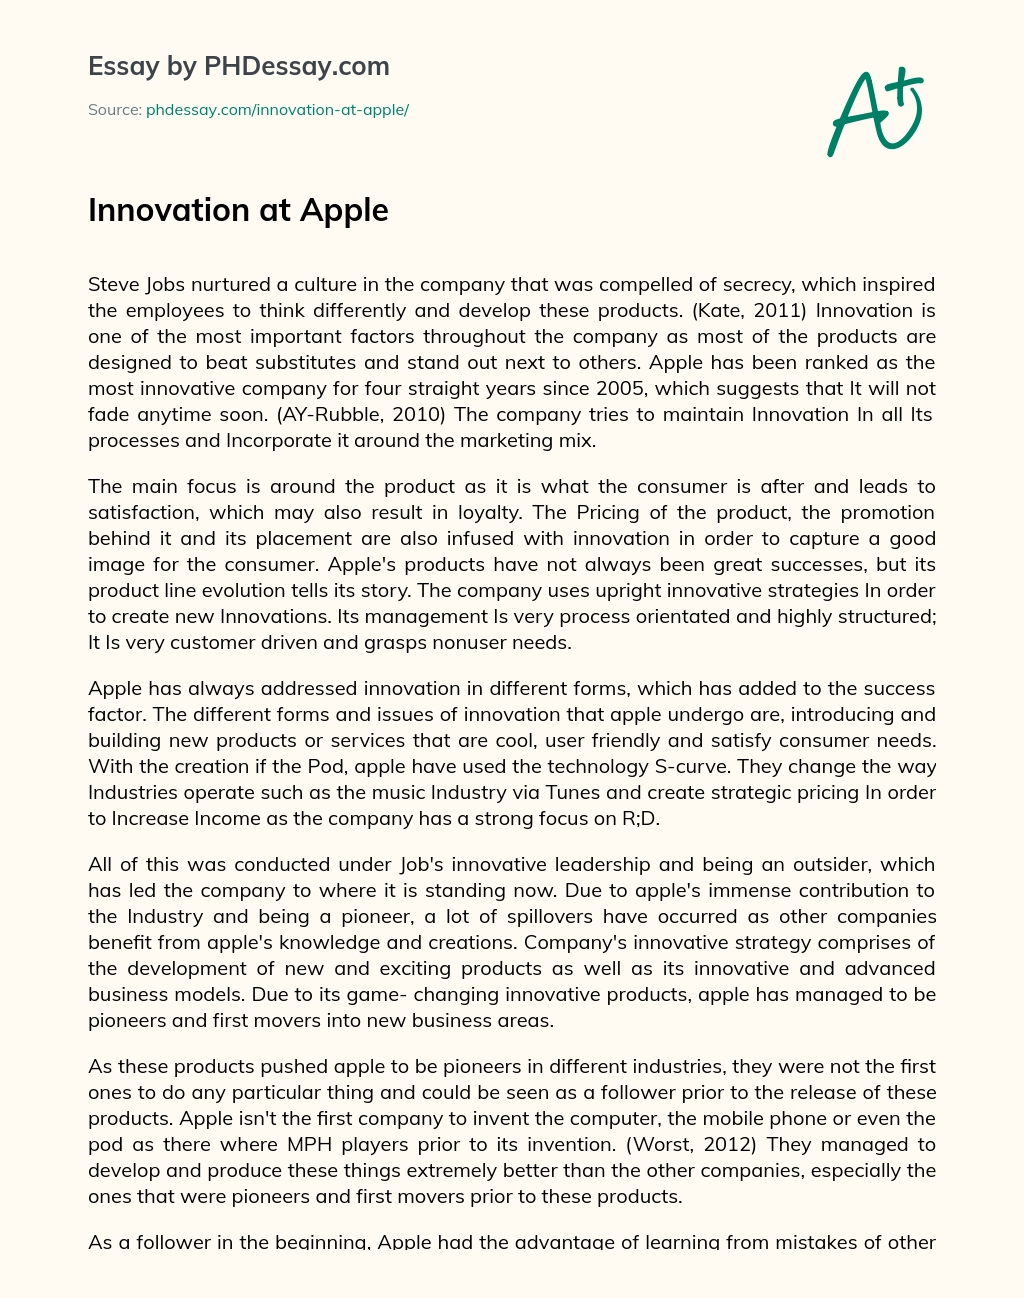 Innovation at Apple essay